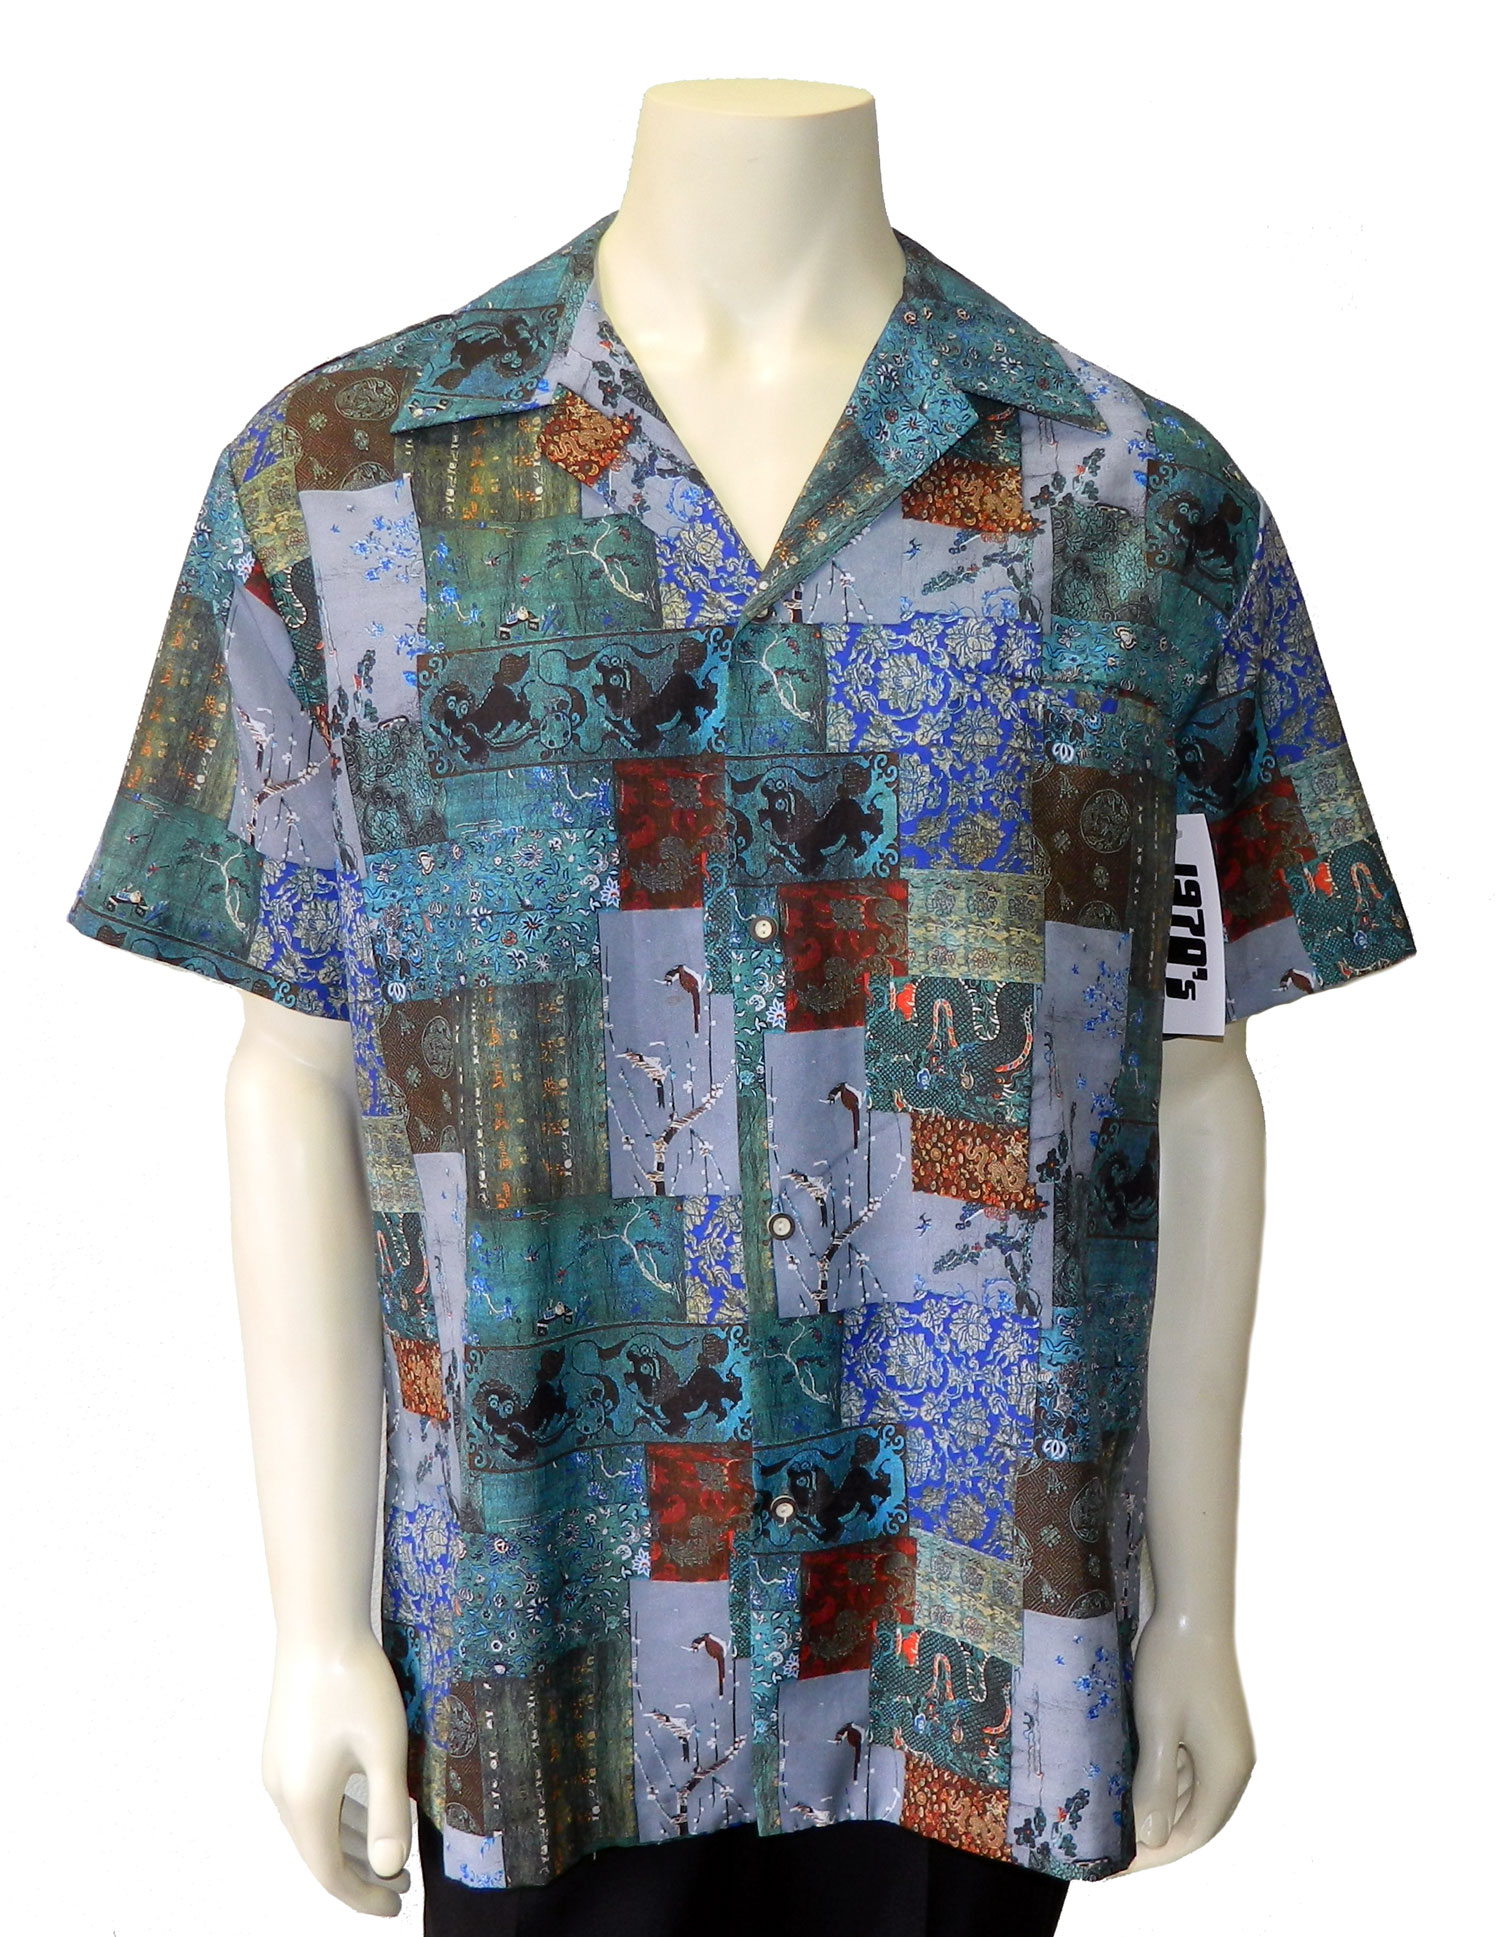 1970s Hawaiian shirt